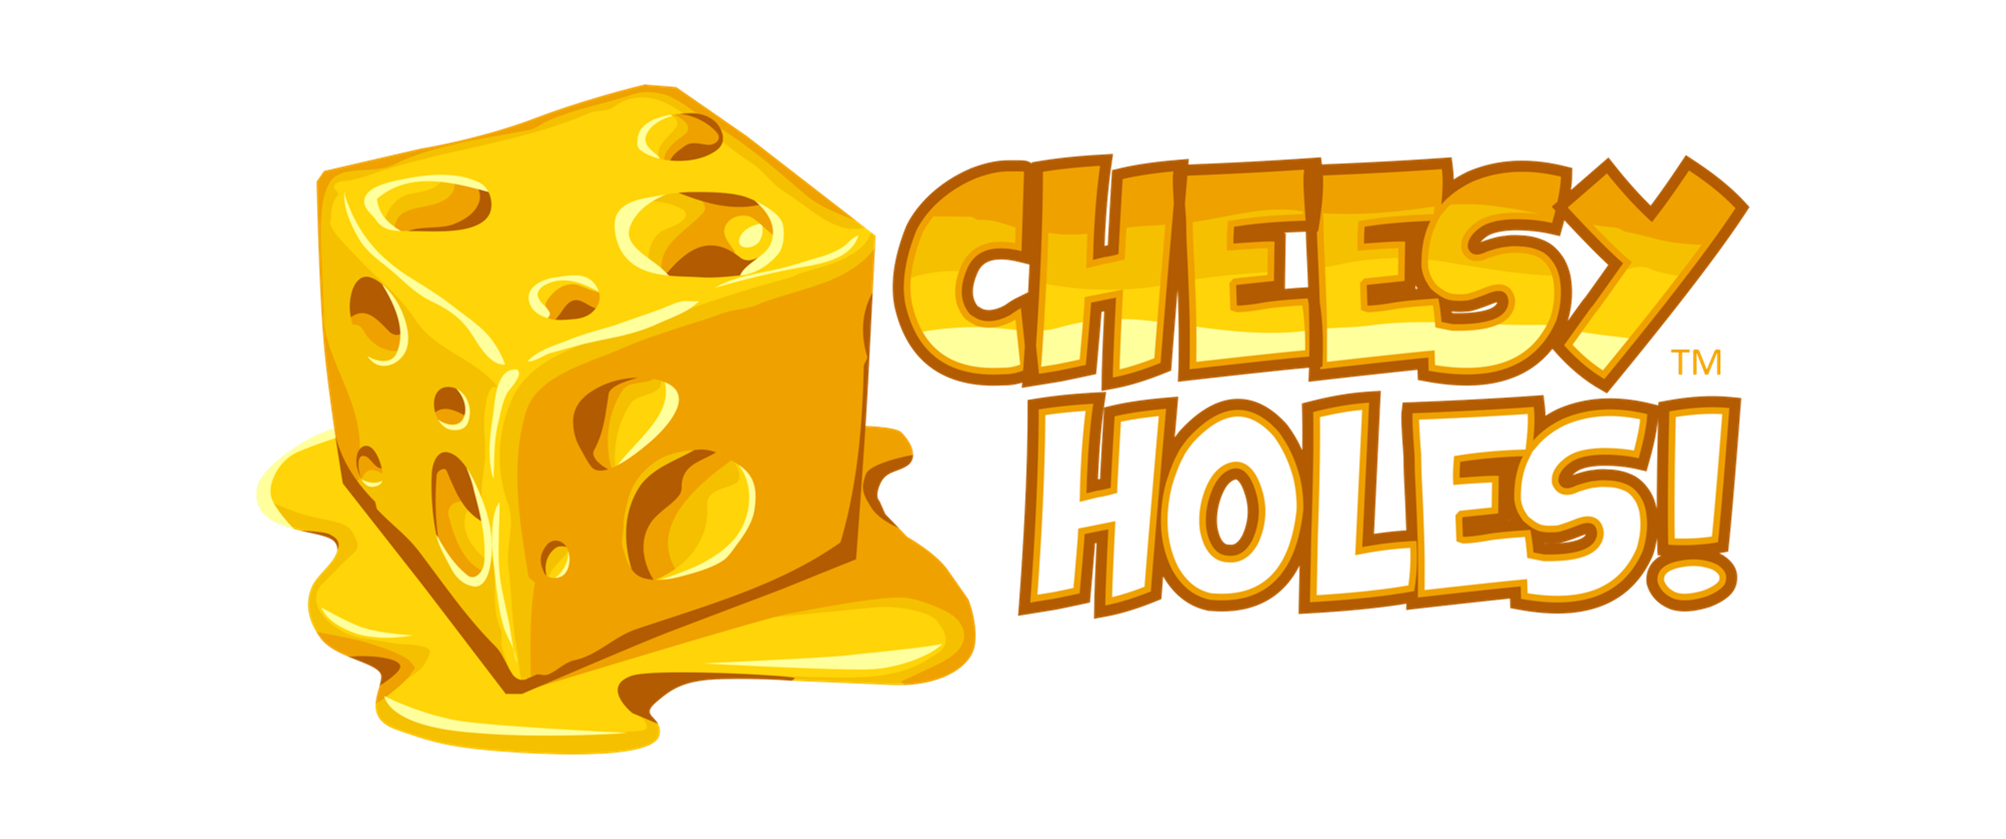 Cheesy Holes